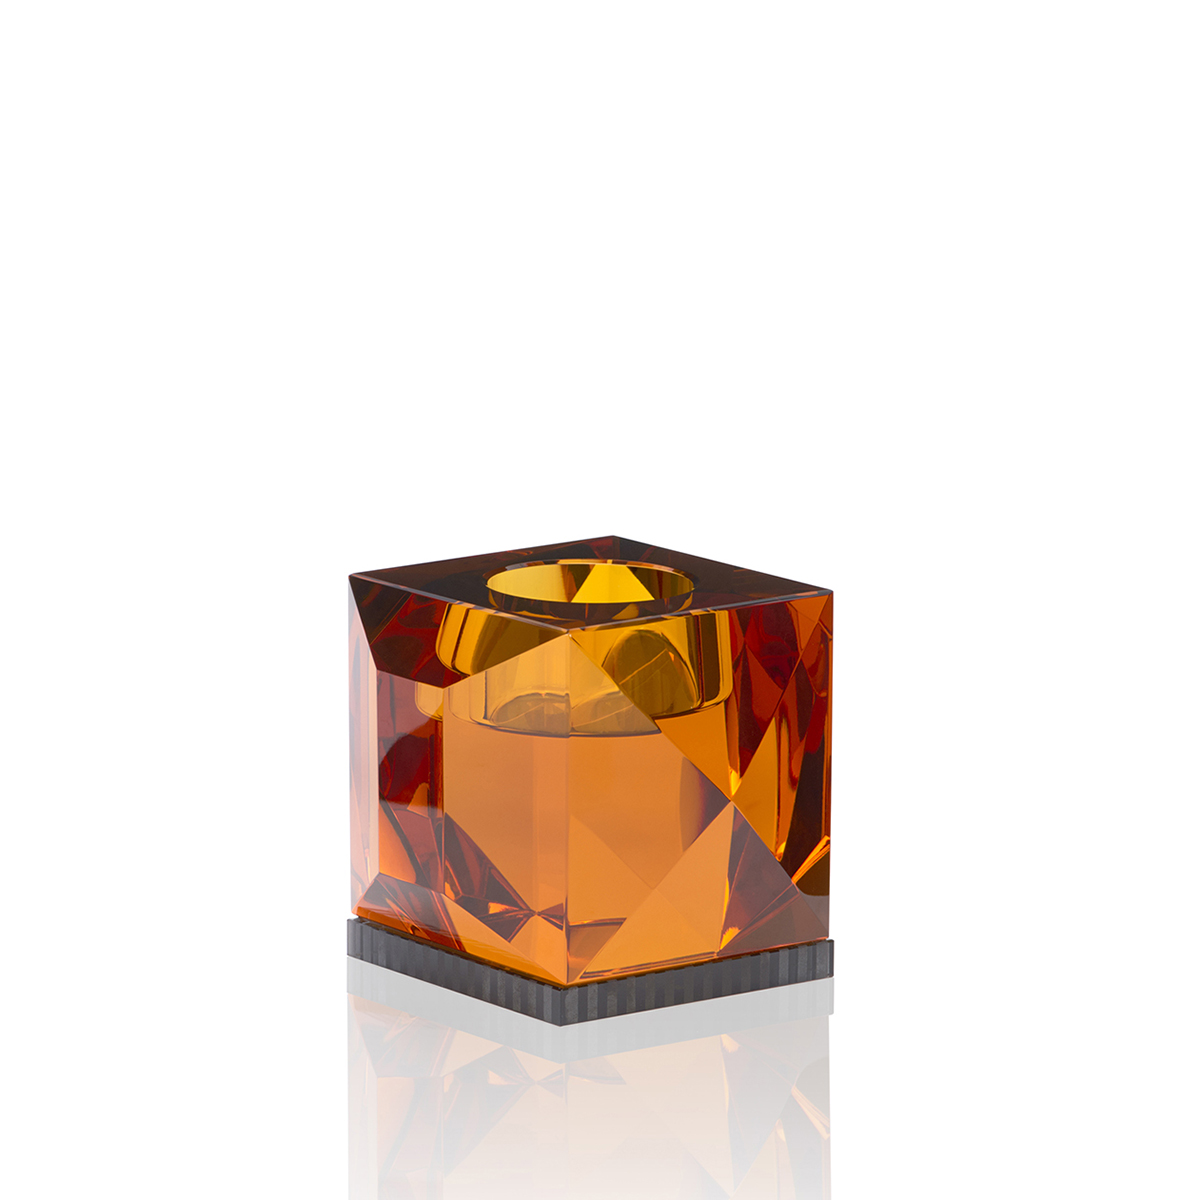 lysetsake i krystall i amber og sort